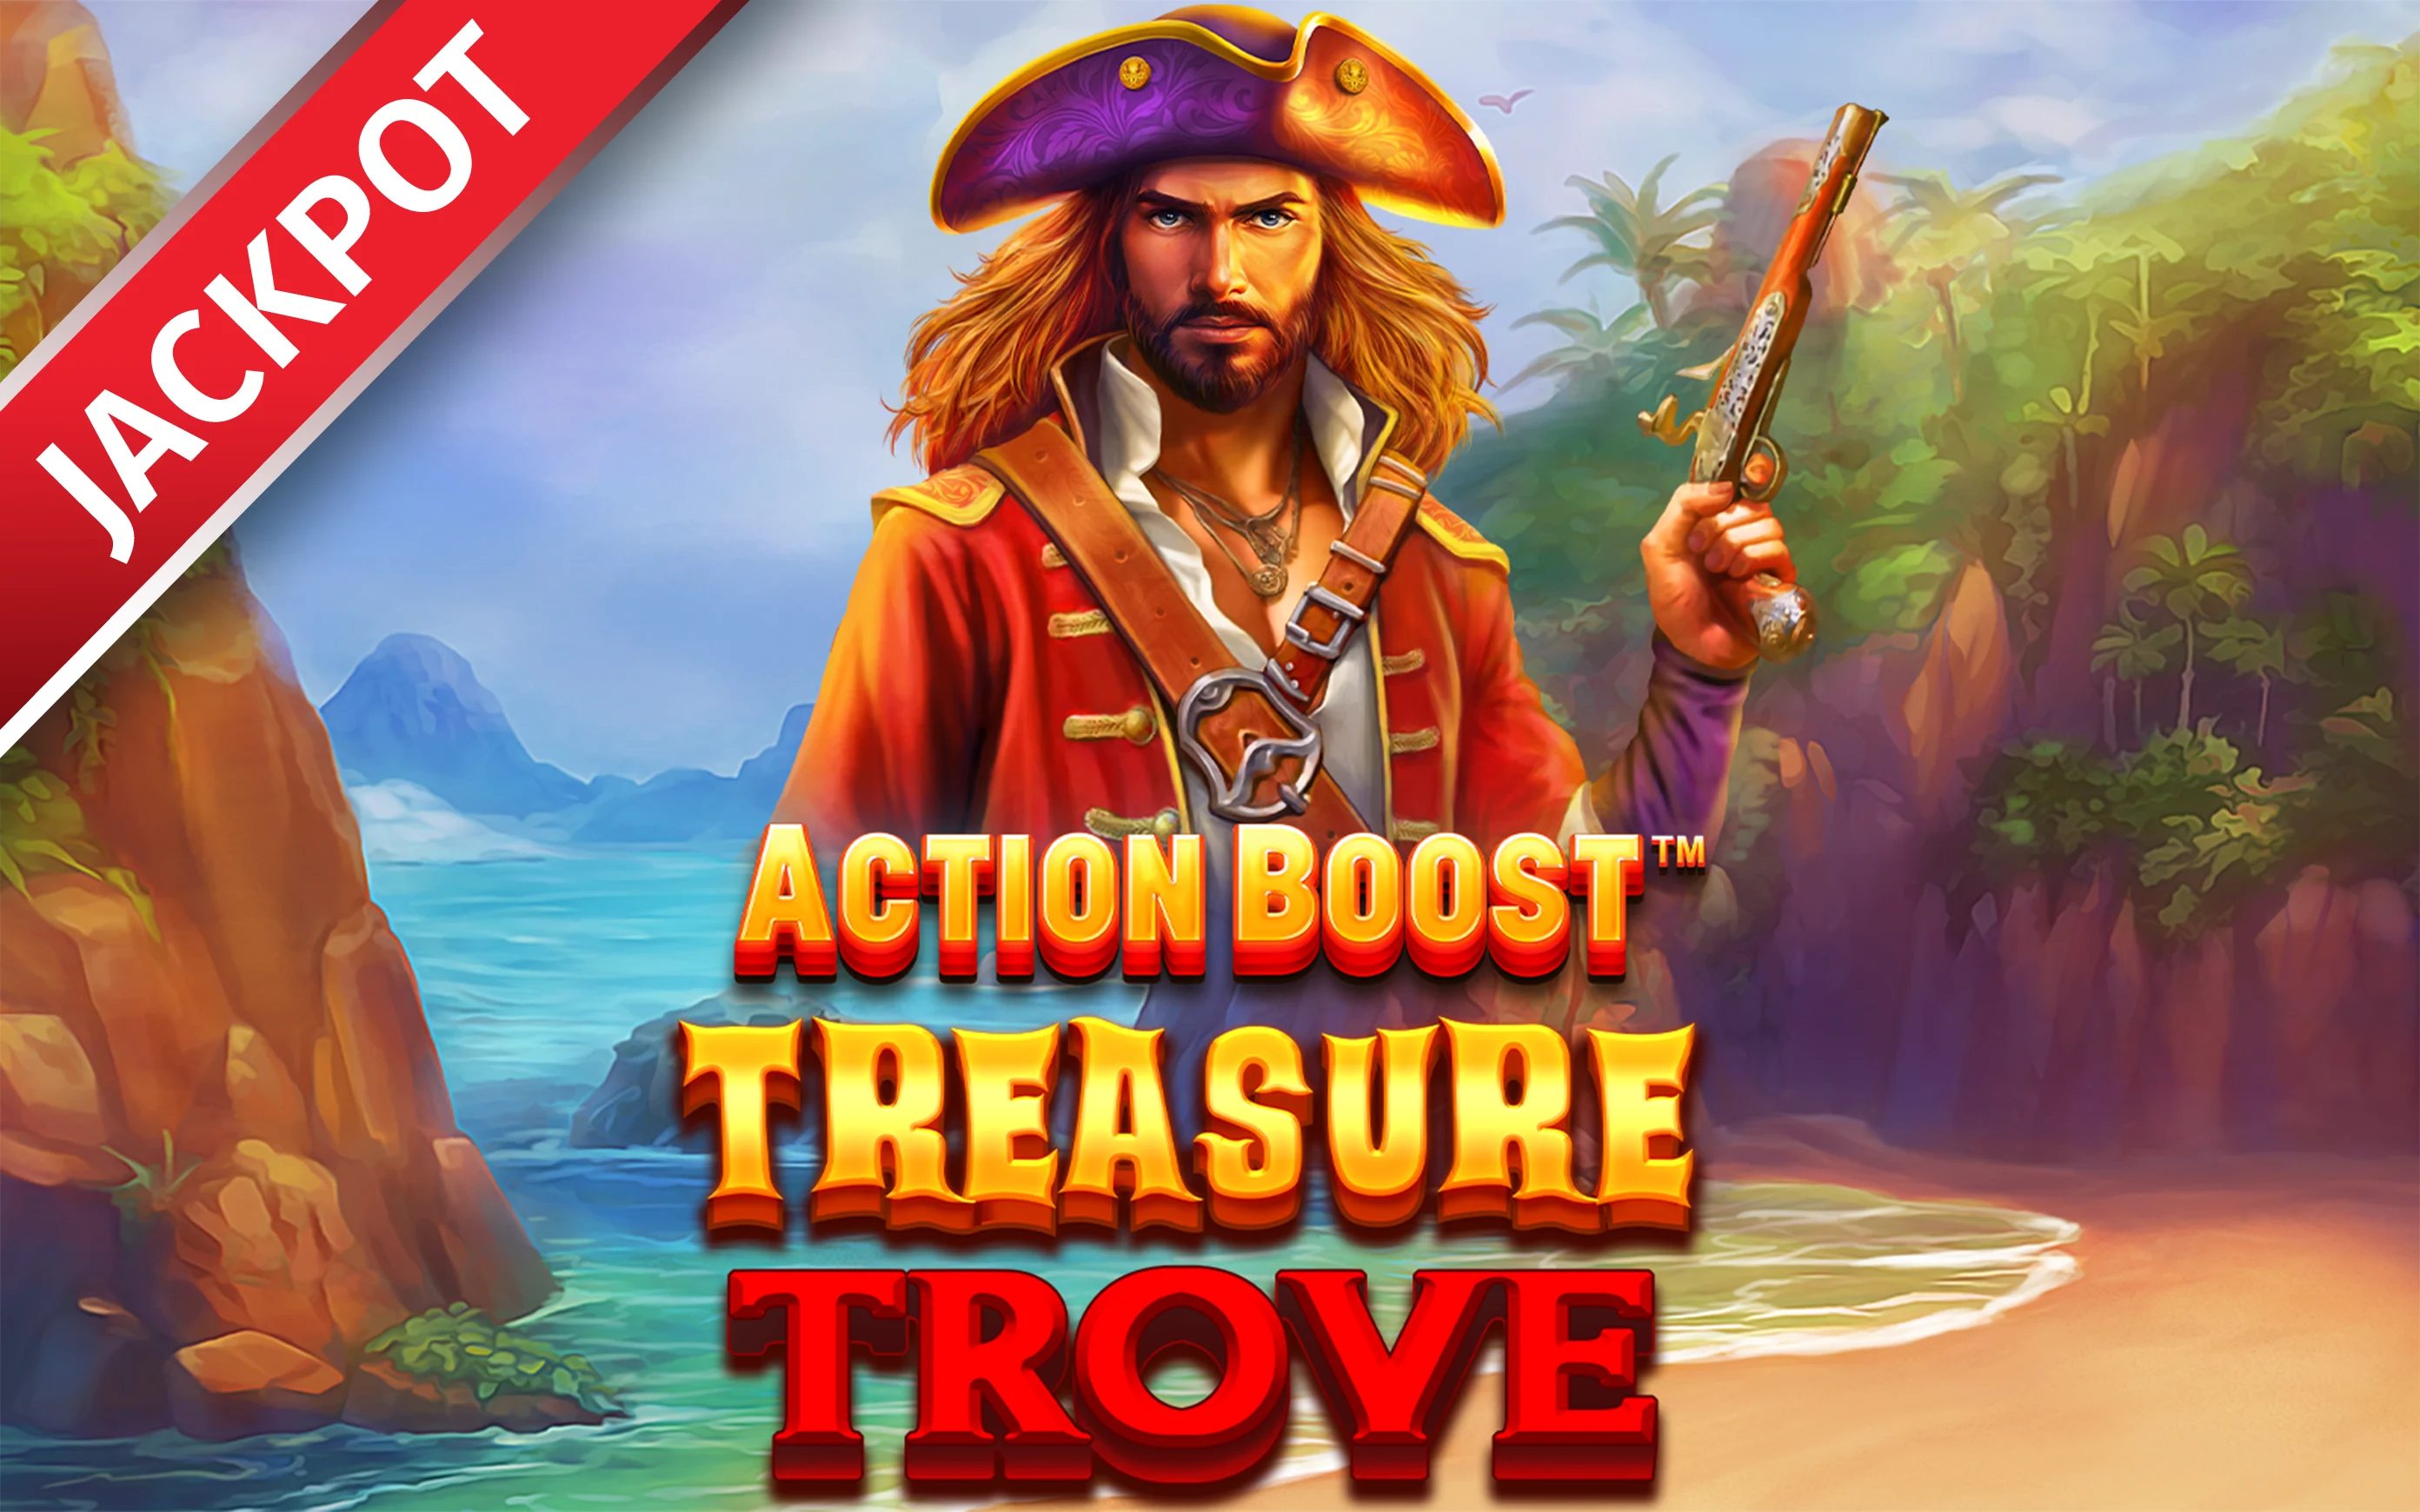 Играйте в Action Boost™ Treasure Trove™ в онлайн-казино Starcasino.be